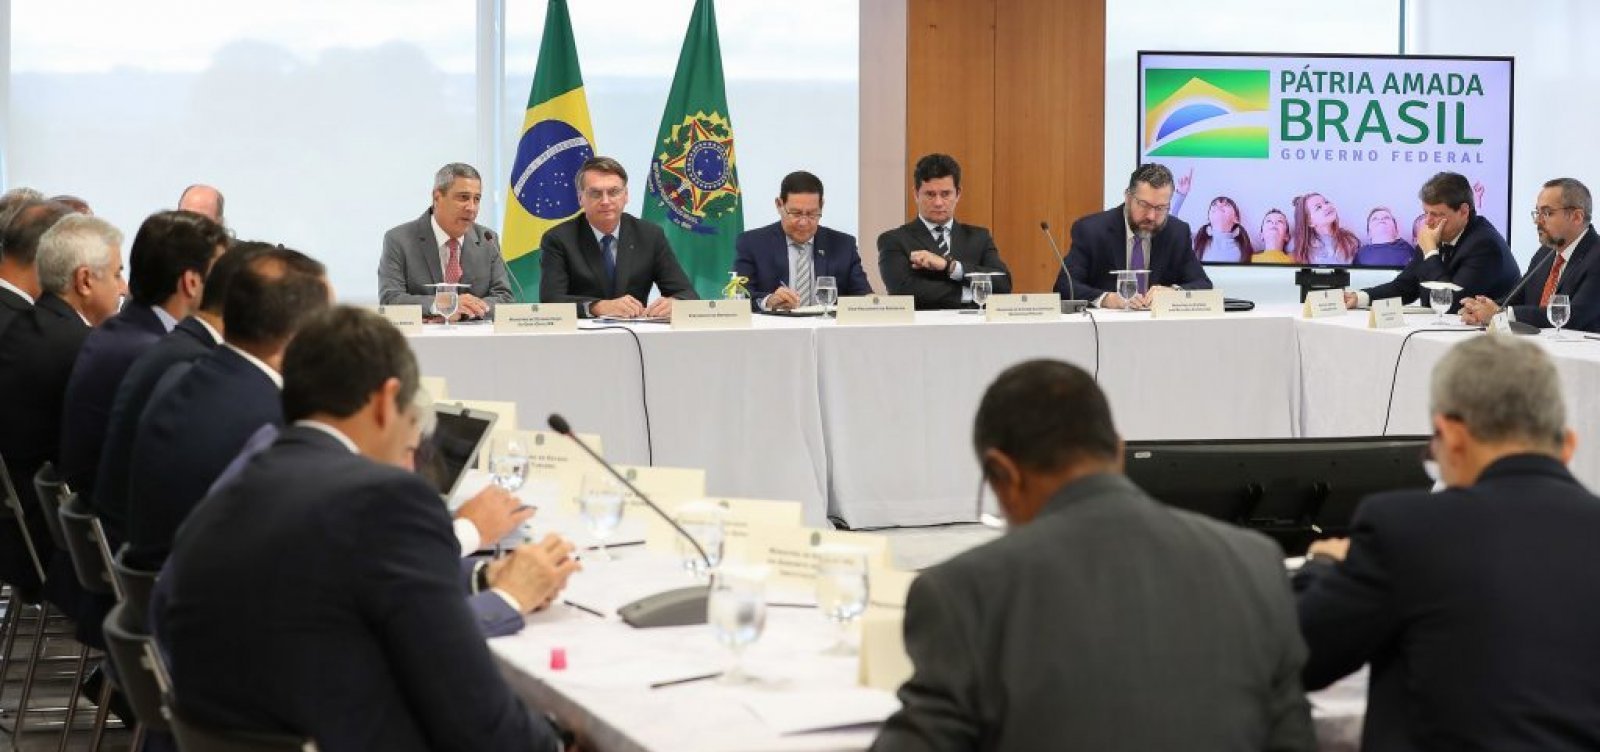 Vídeo da reunião ministerial do governo Bolsonaro é divulgado; veja aqui